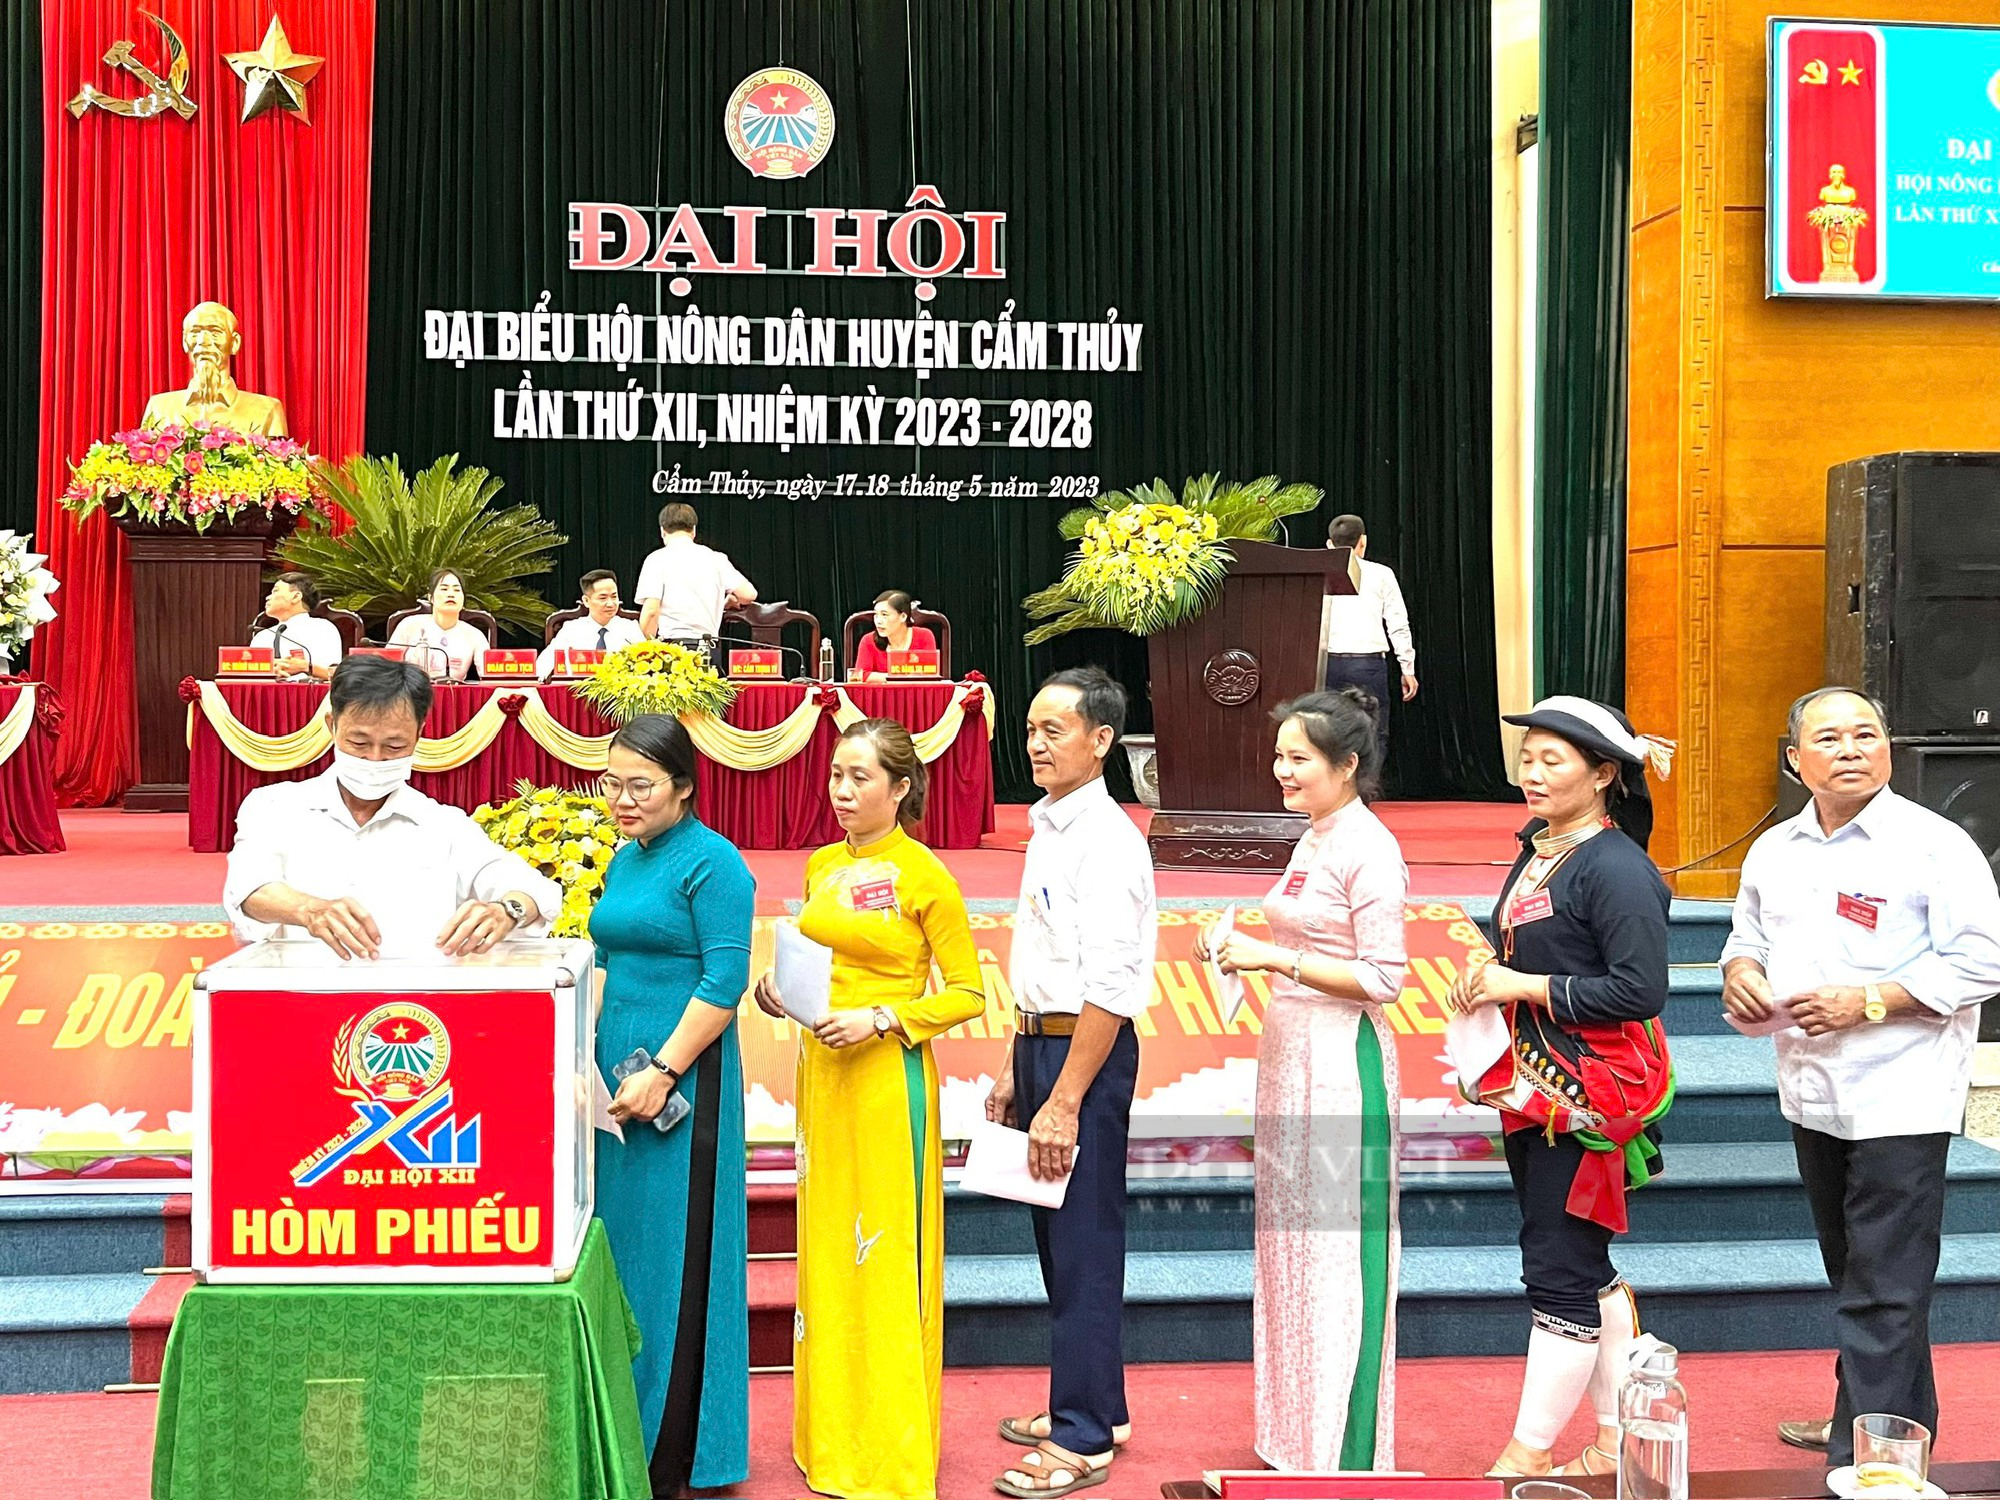 Đại hội đại biểu Hội Nông dân huyện Cẩm Thuỷ, ông Trịnh Huy Phương tái đắc cử Chủ tịch - Ảnh 3.